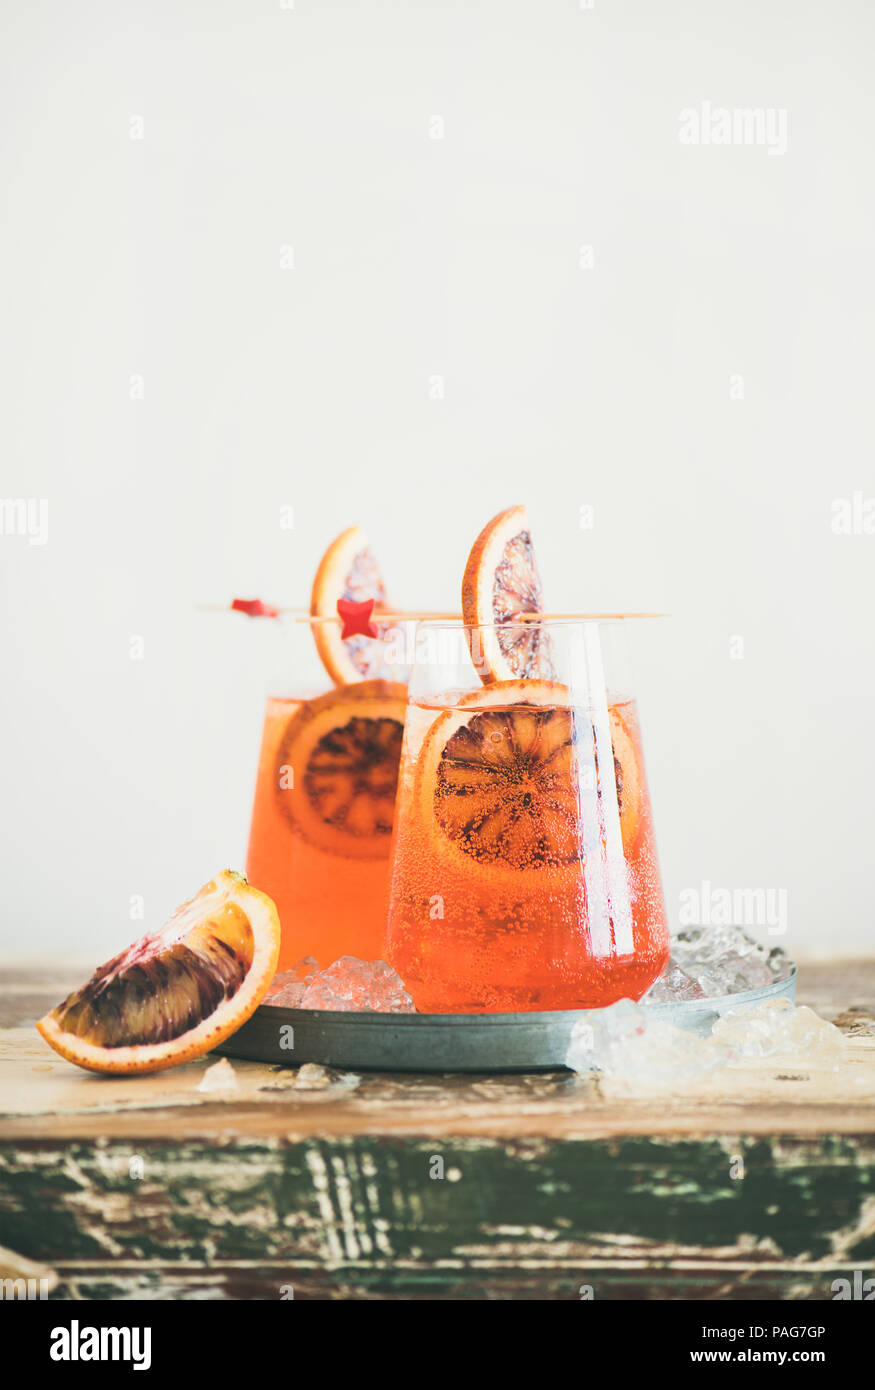 Spritz Aperol cóctel de alcohol con hielo y naranja sanguina Foto de stock